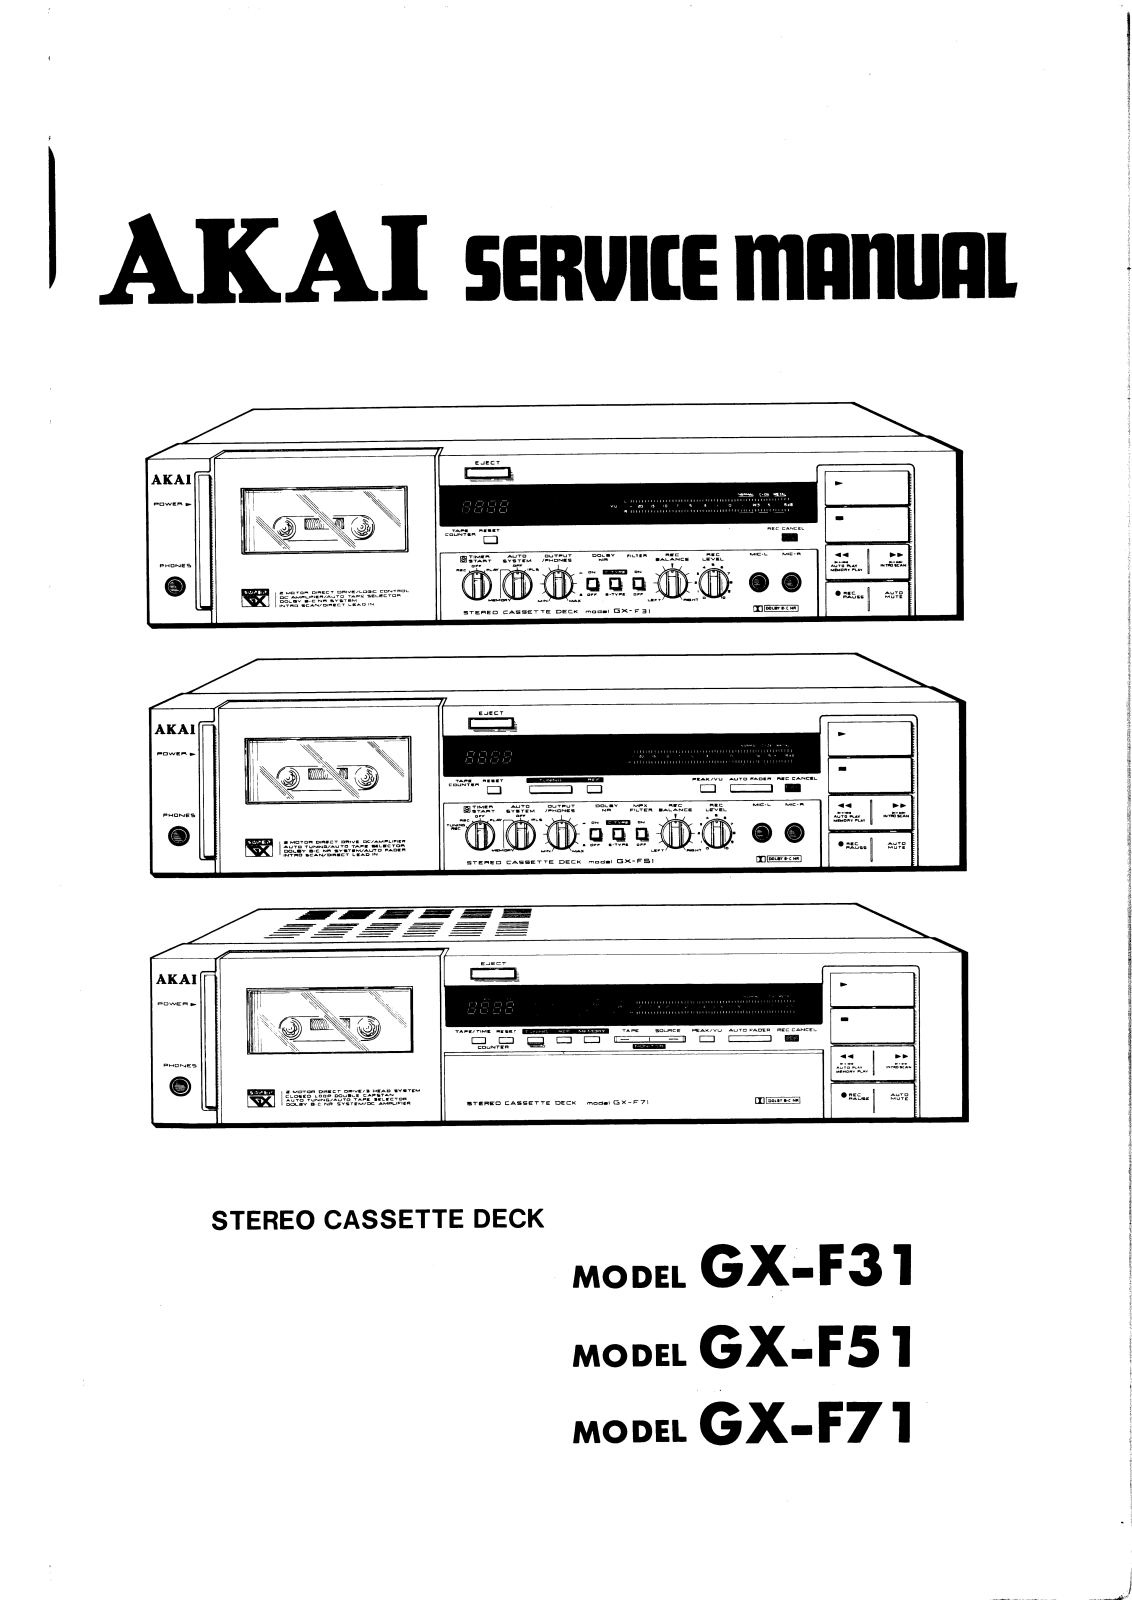 Akai GX-F31, GX-F51, GX-F71 User Manual